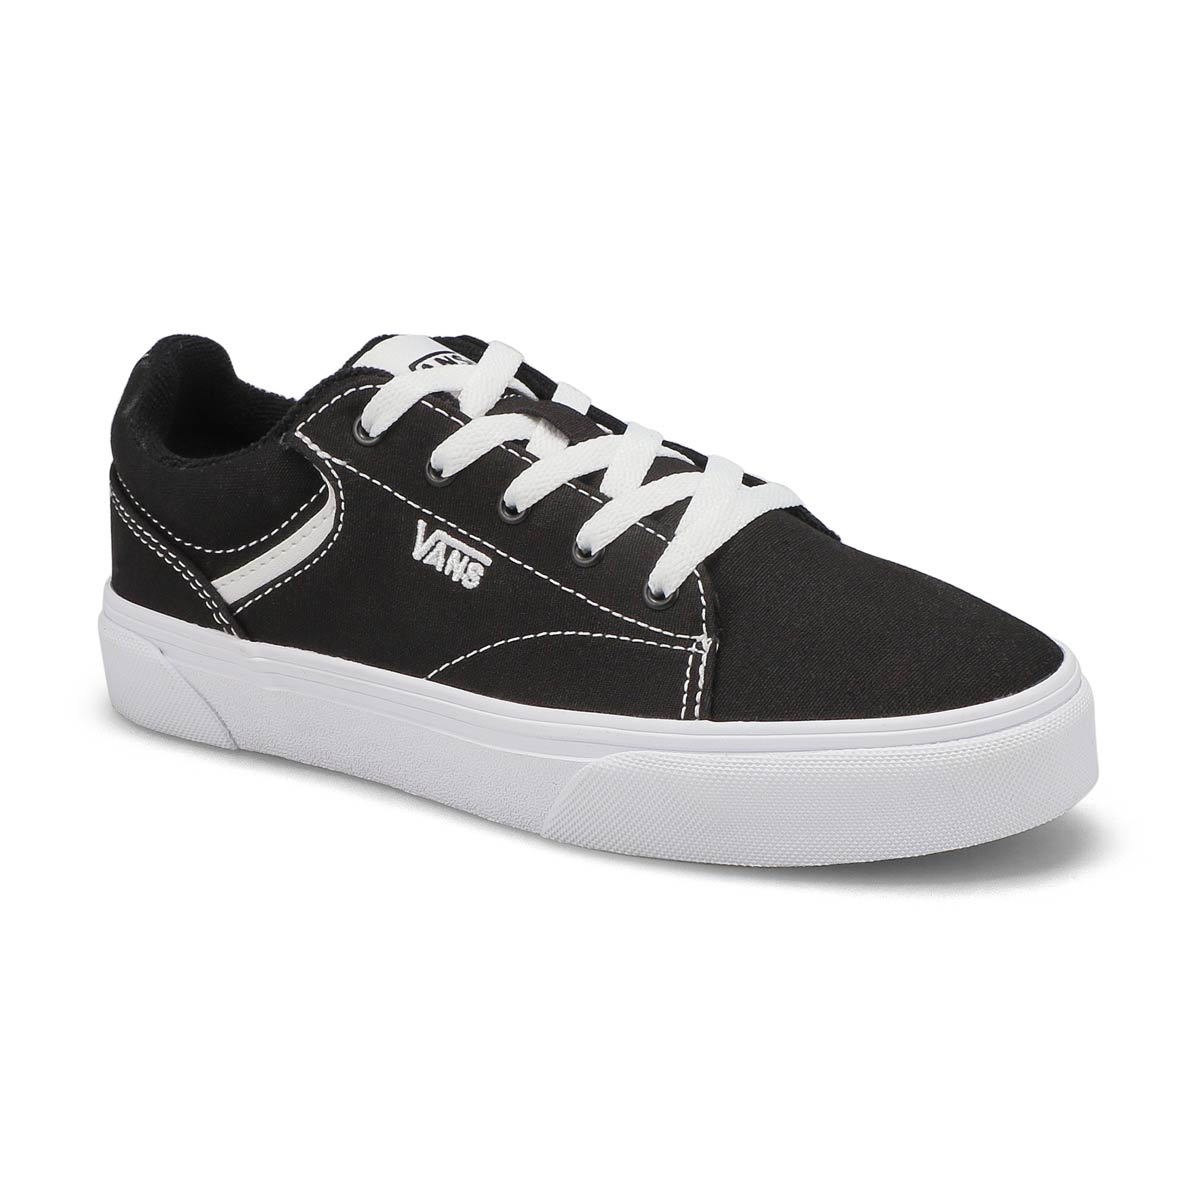 Vans Kids' SELDAN black/white sneakers 